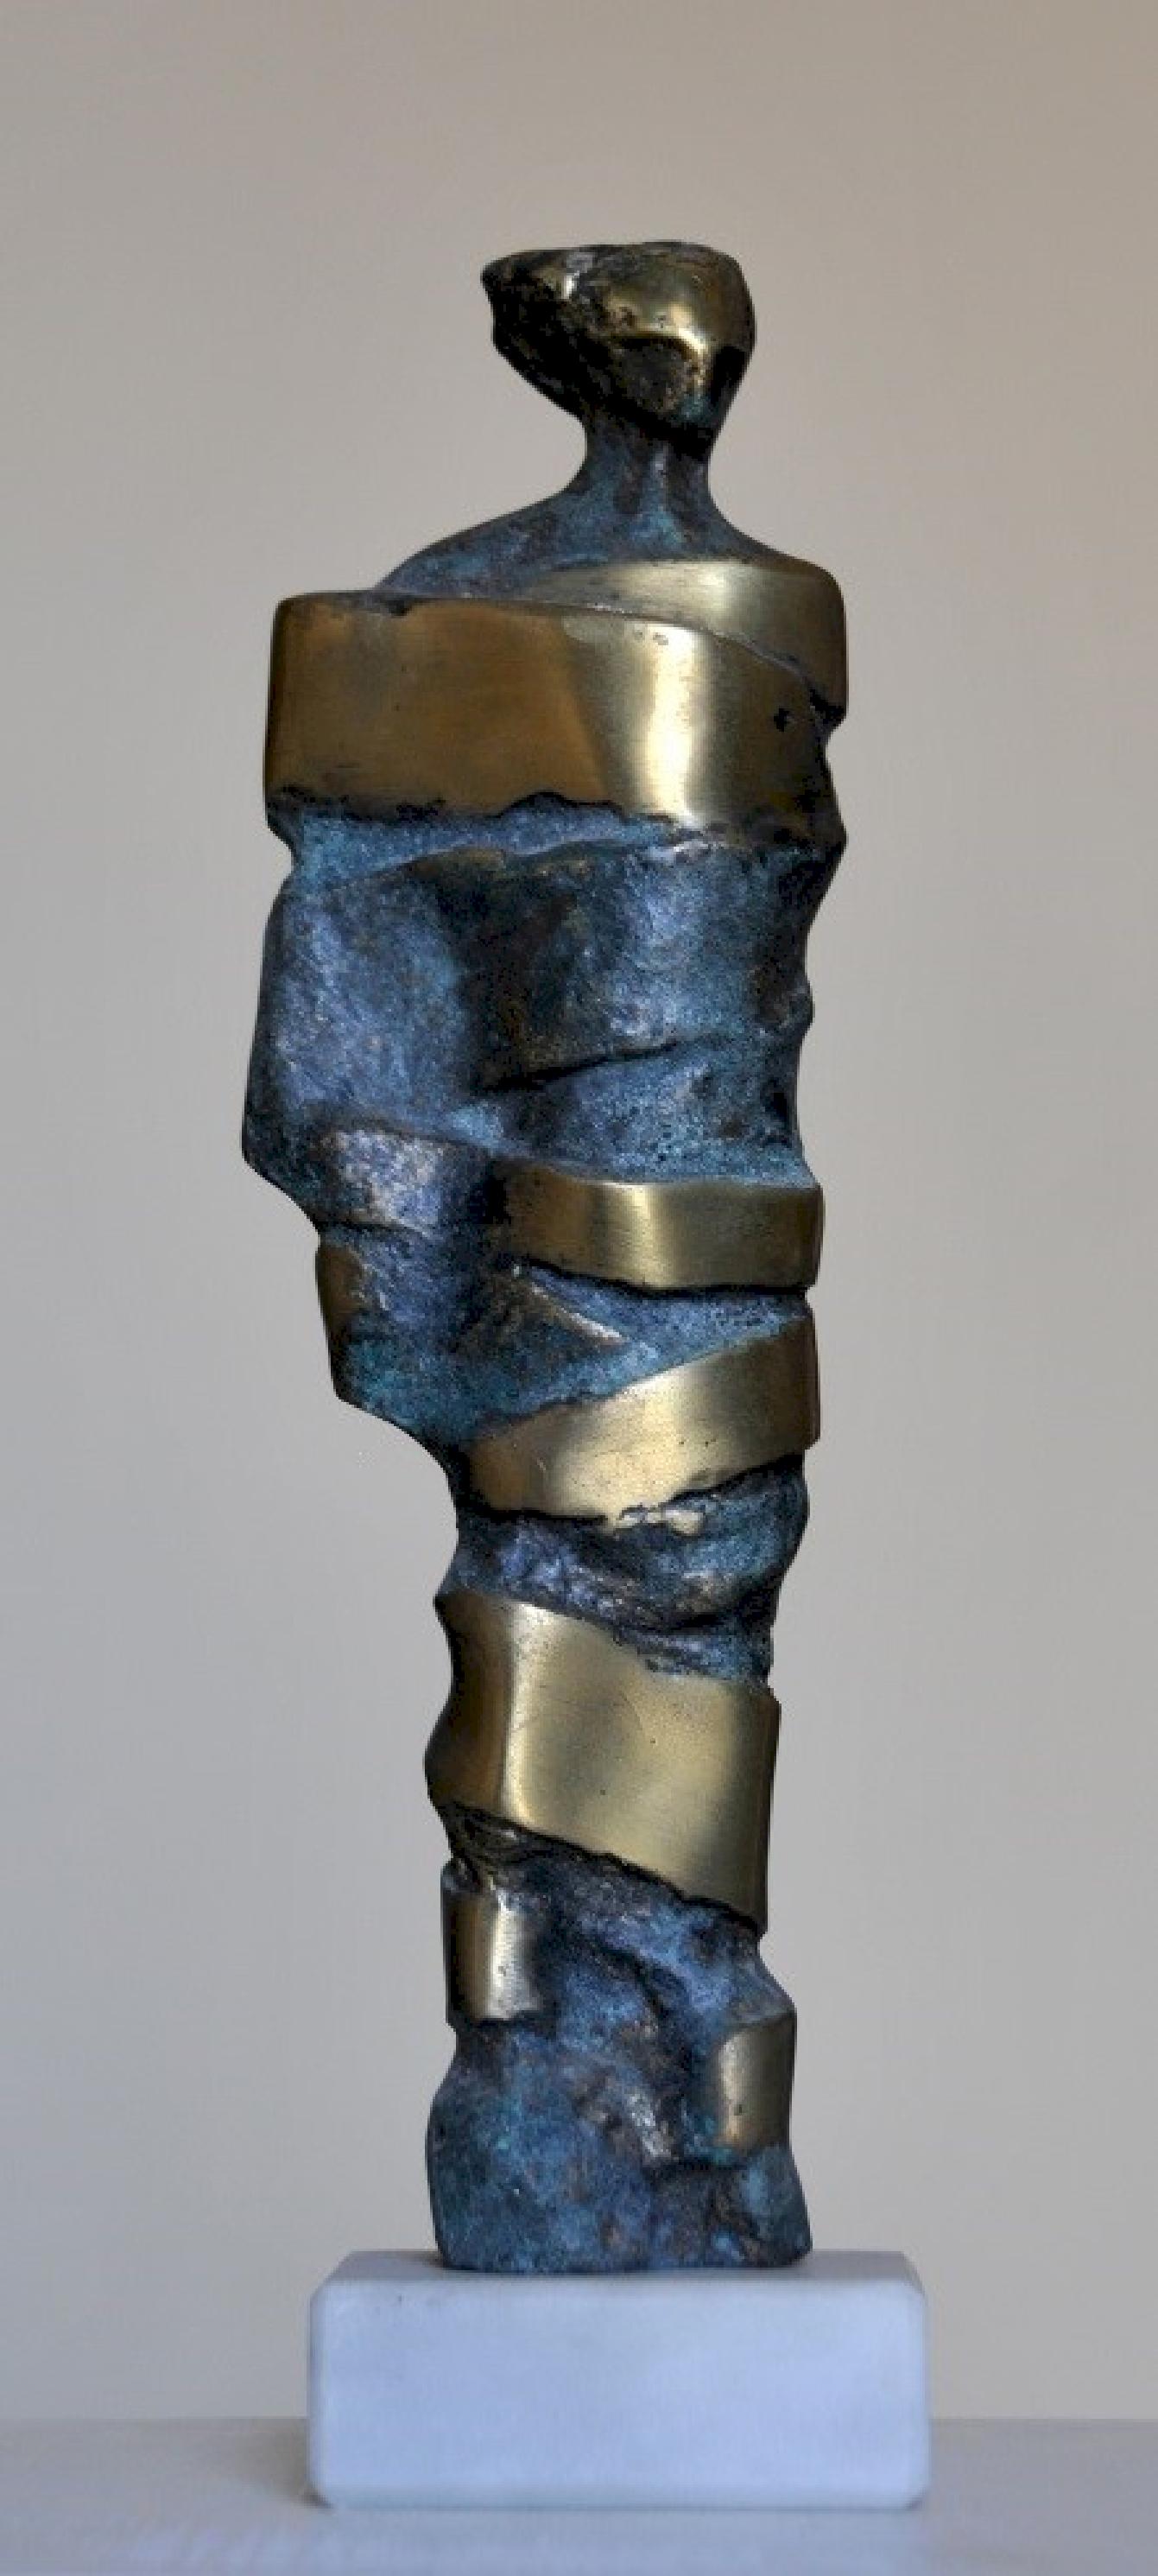 Sculpture en bronze "Bound II" de 11" x 3" pouces par Sarkis Tossonian	

Sarkis Tossoonian est né à Alexandrie en 1953. Il est diplômé de la Faculté des Beaux-Arts/Sculpture en 1979. Il a commencé à exposer dans des expositions individuelles et